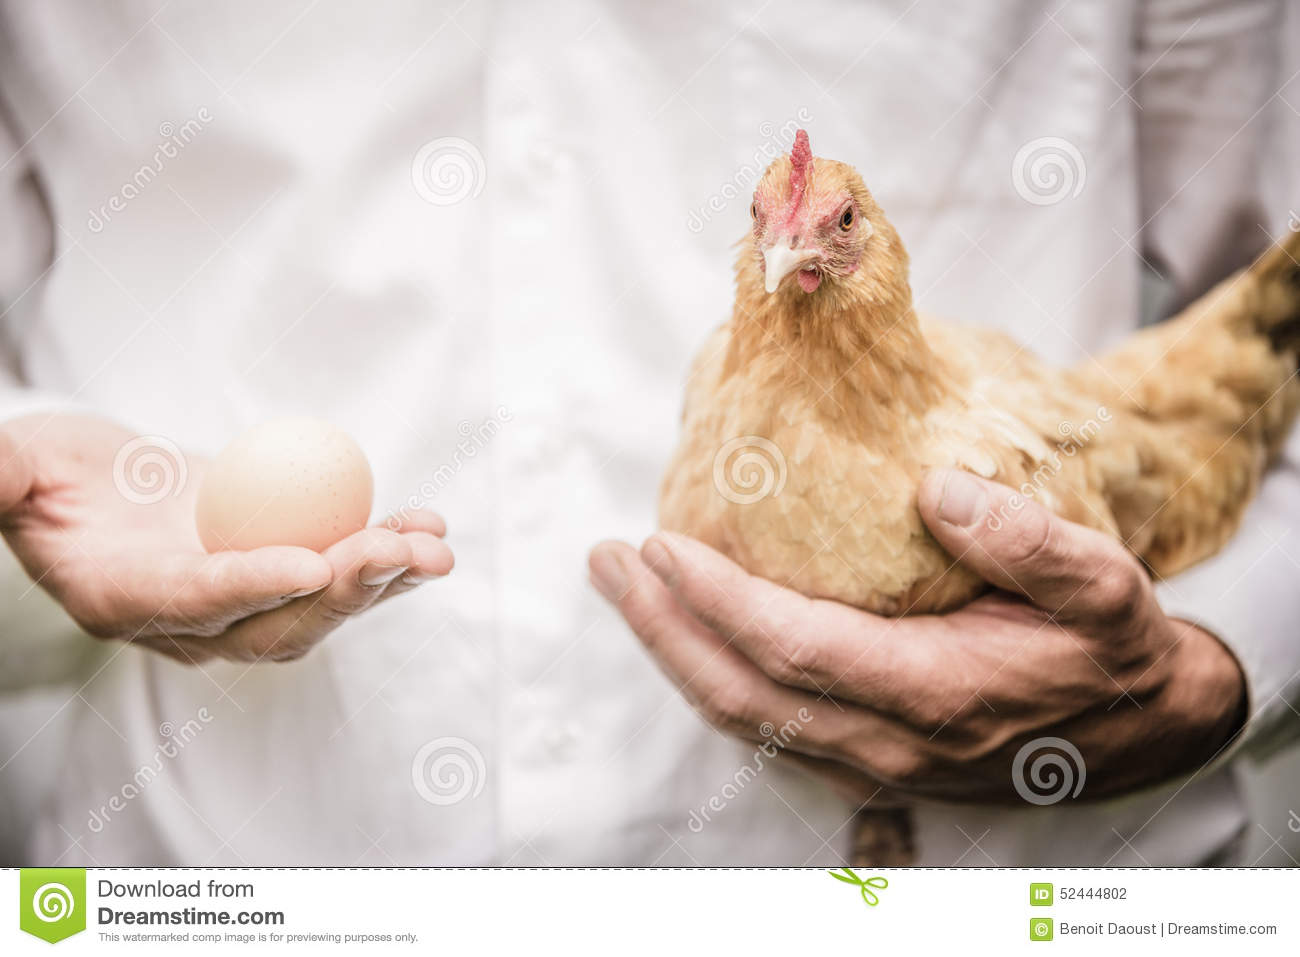  到底是先有鸡还是先有蛋，从科学的角度来解答你